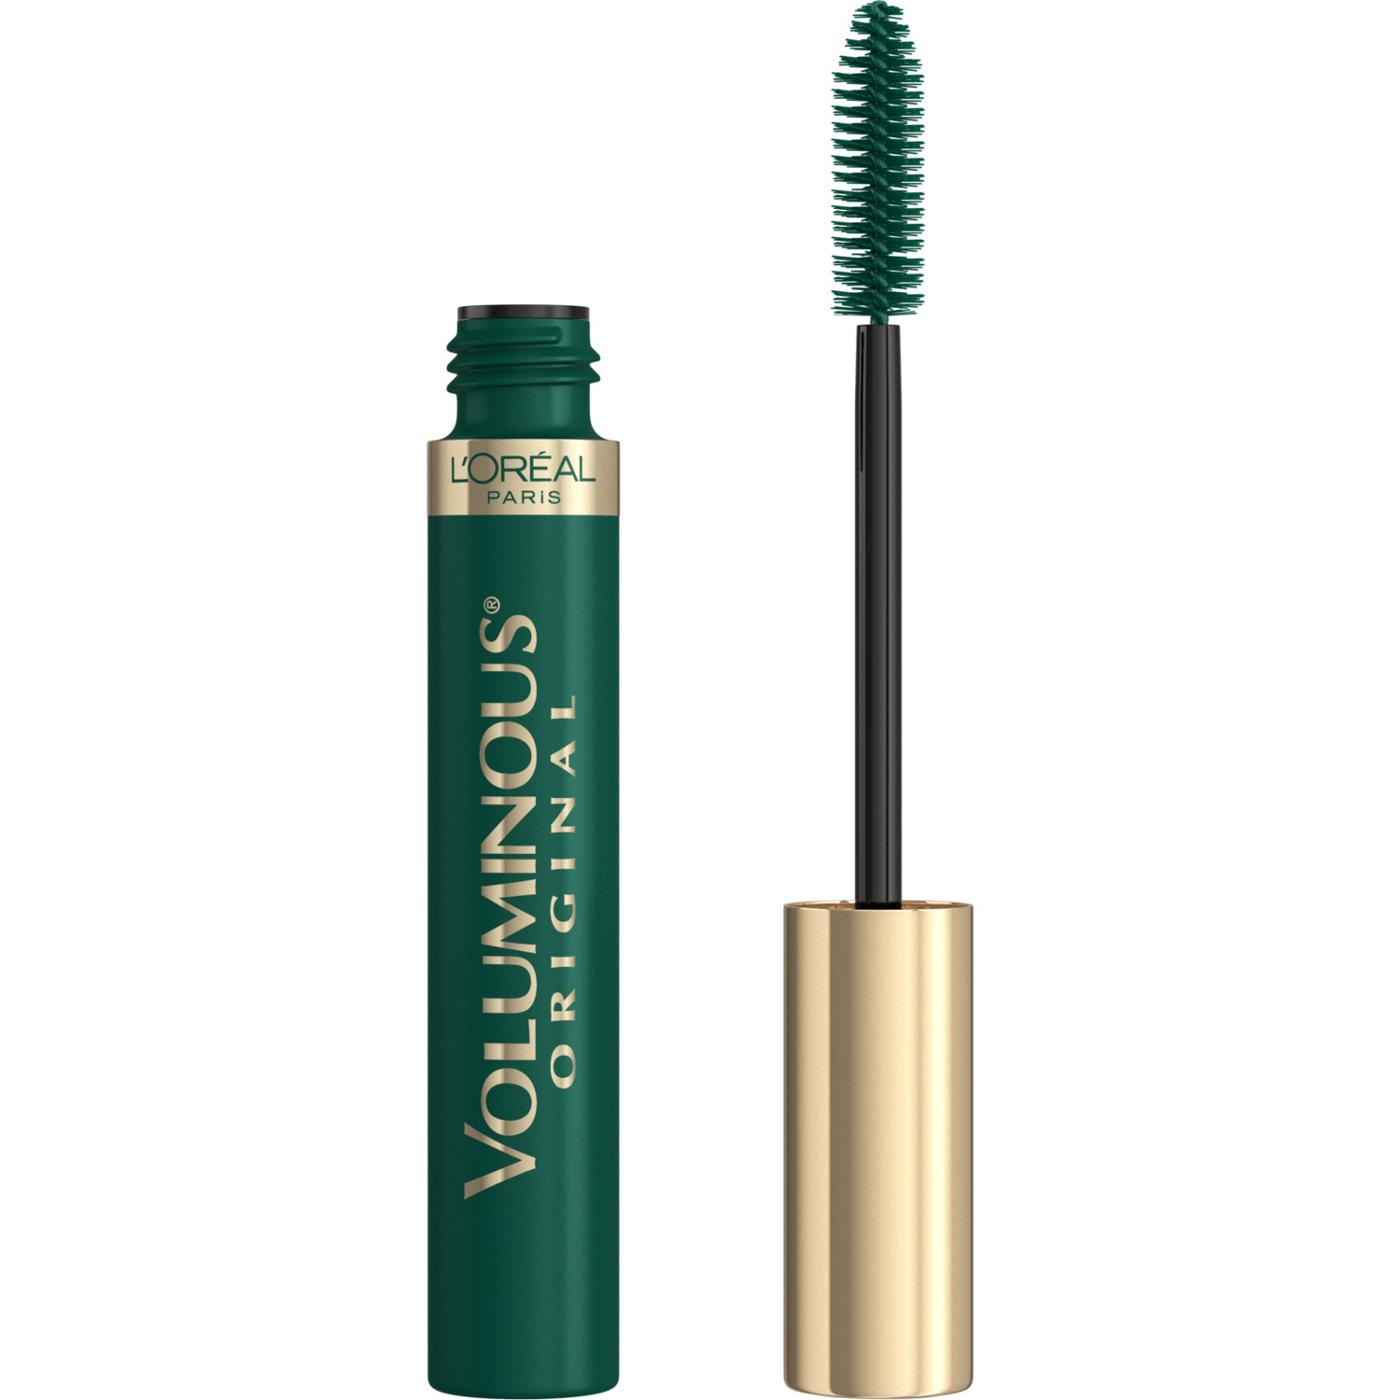 L'Oréal Paris Voluminous Original Bold Eye Mascara - Deep Green; image 4 of 8